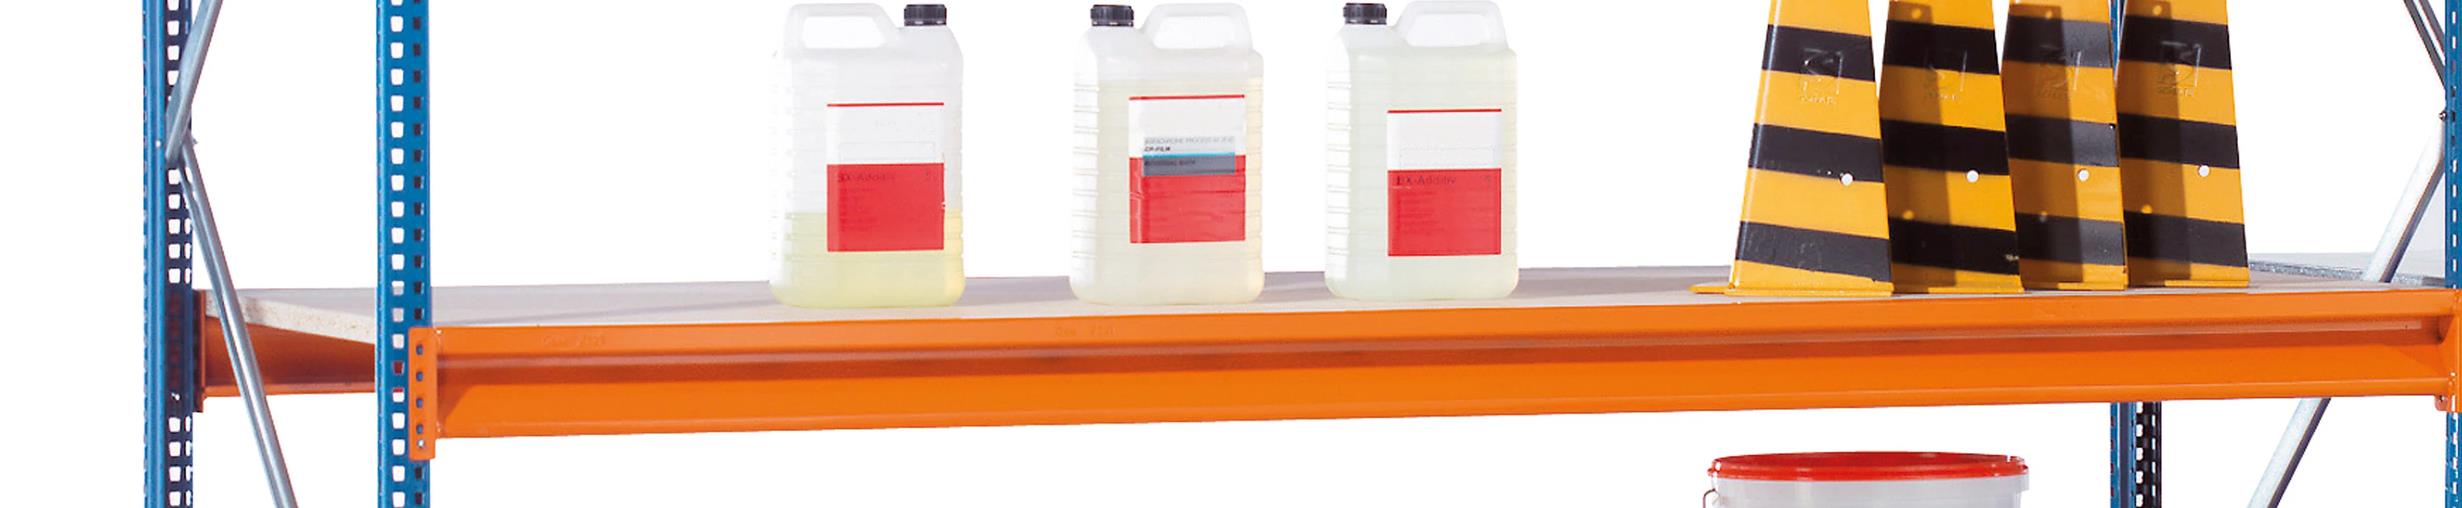 Zusatzebene mit Spanplatten für Schulte Weitspannregal W 100 | BxT 250x80cm | Fachlast 1.015kg | Orange/Verzinkt